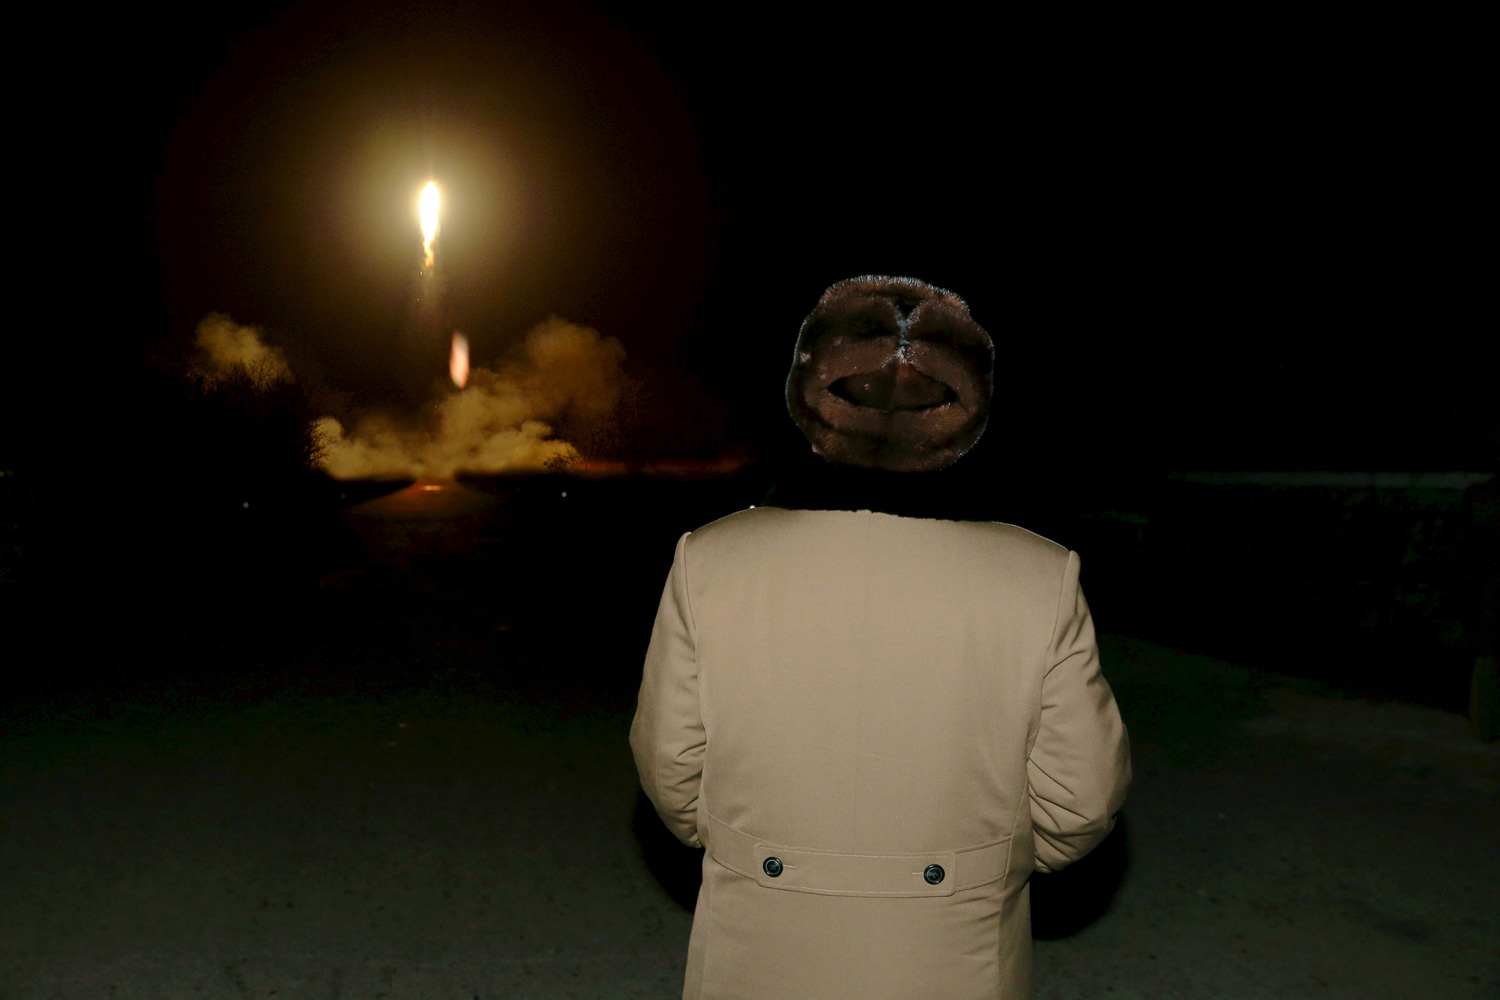 Corea del Norte dispara tres misiles balísticos al mar